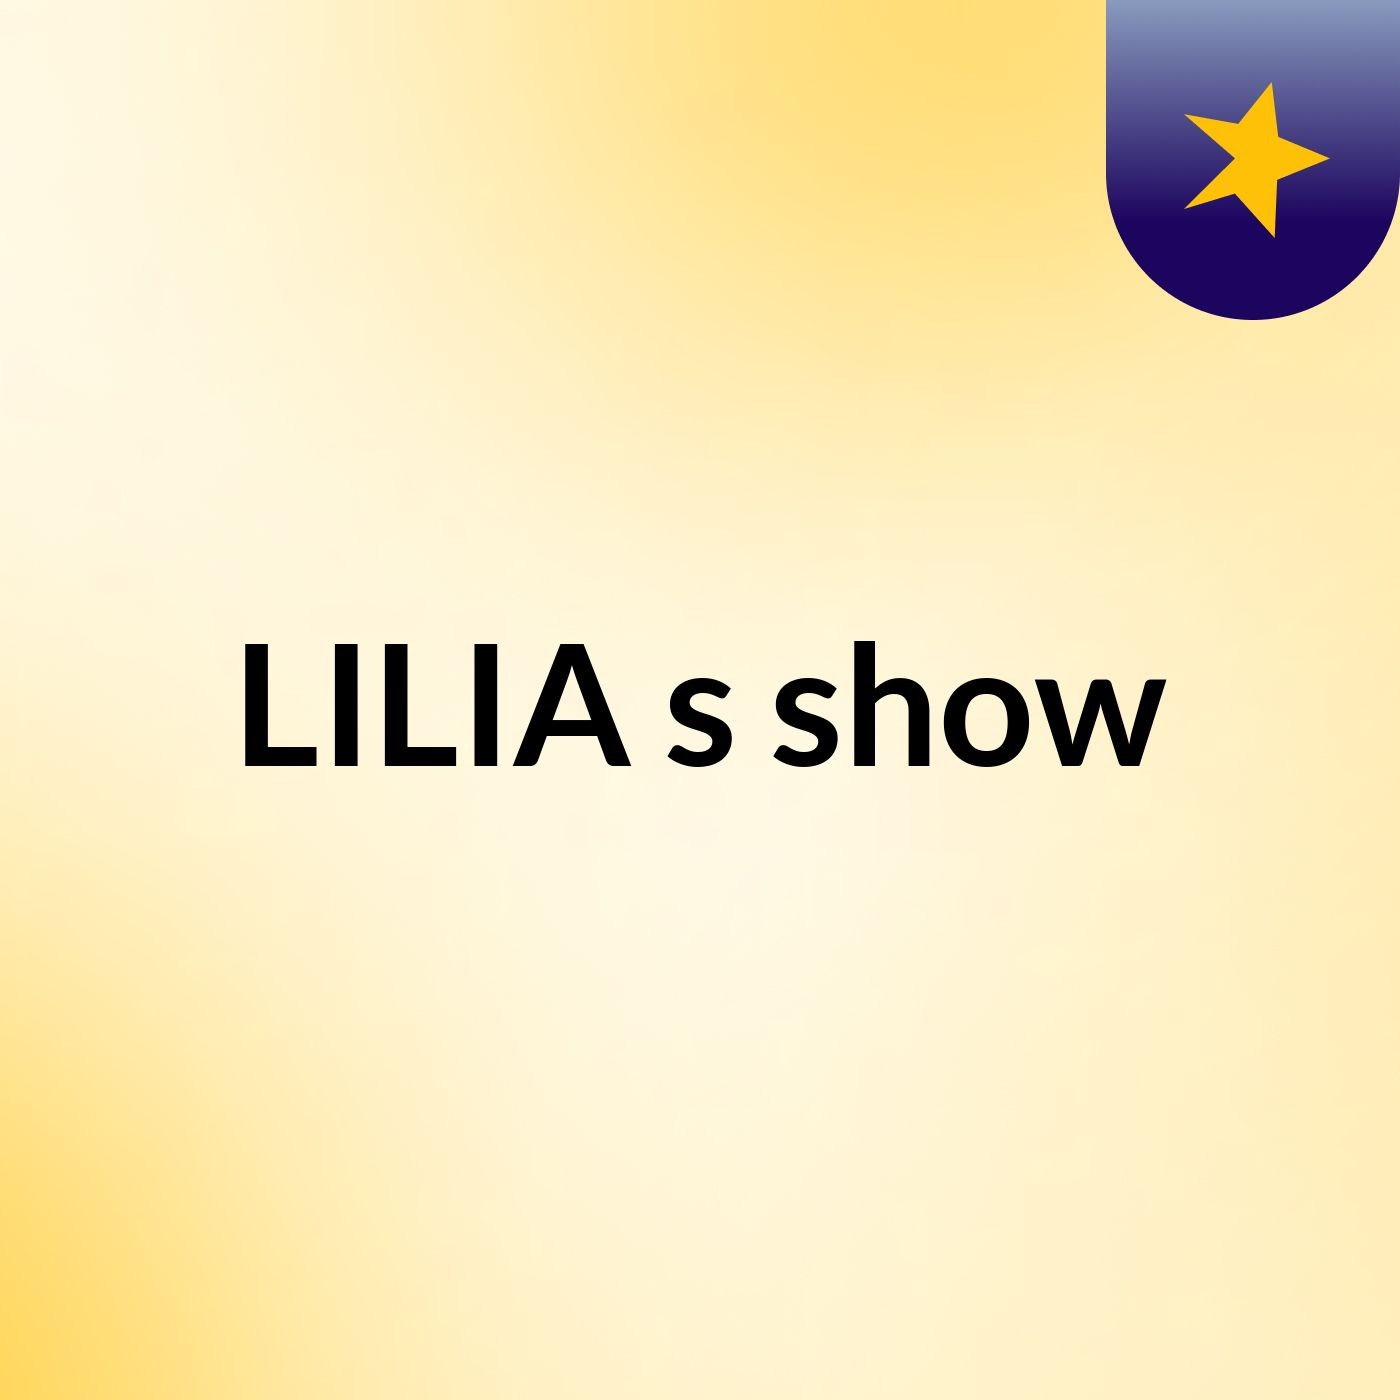 LILIA's show